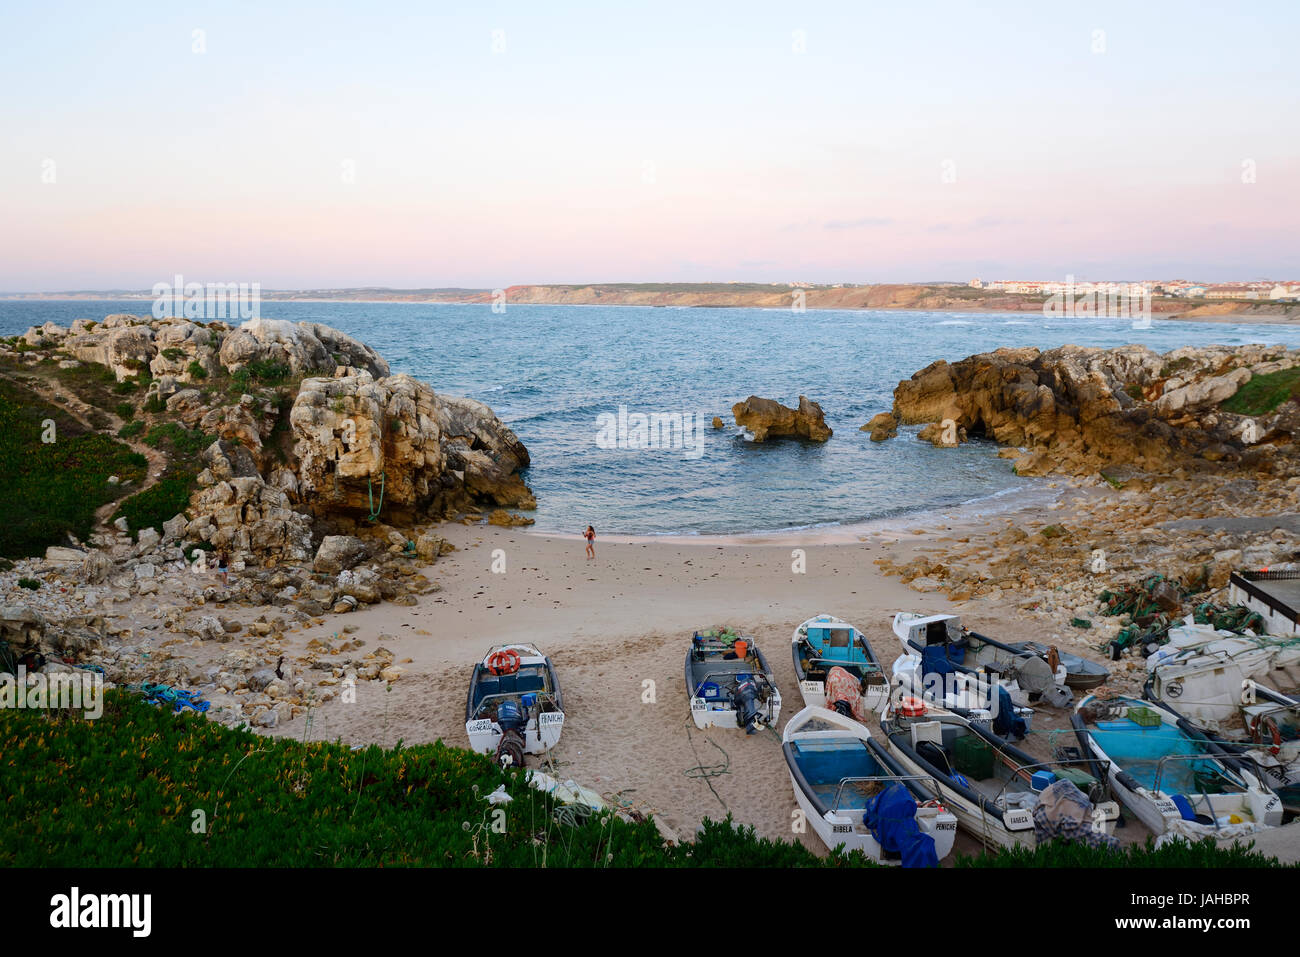 Le petit port de l'île rocheuse de Baleal, sur la côte atlantique. Peniche, Portugal Banque D'Images